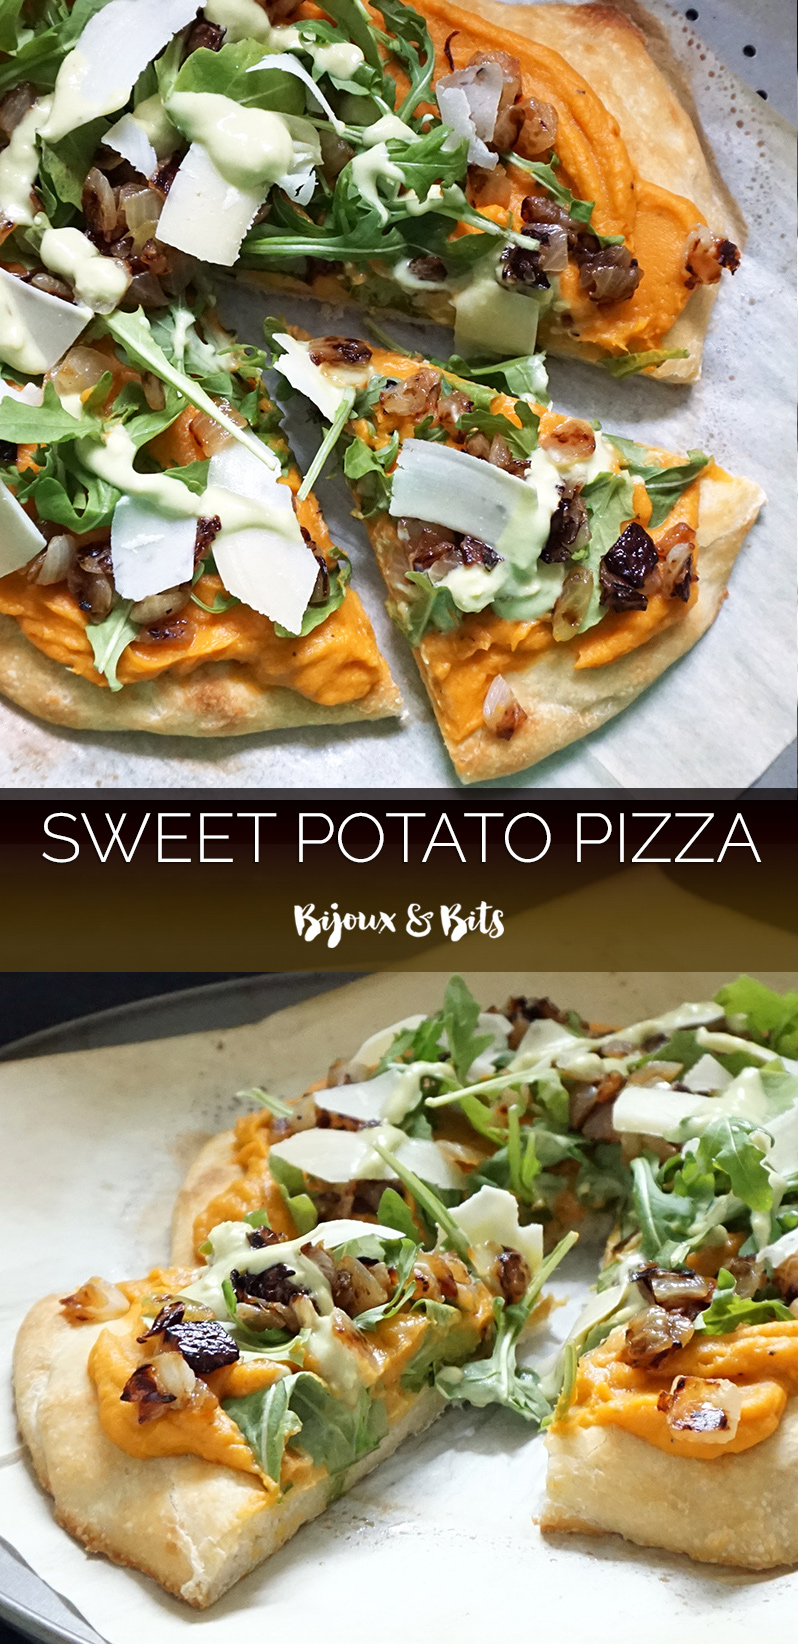 Sweet potato pizza with avocado cream | Bijoux & Bits